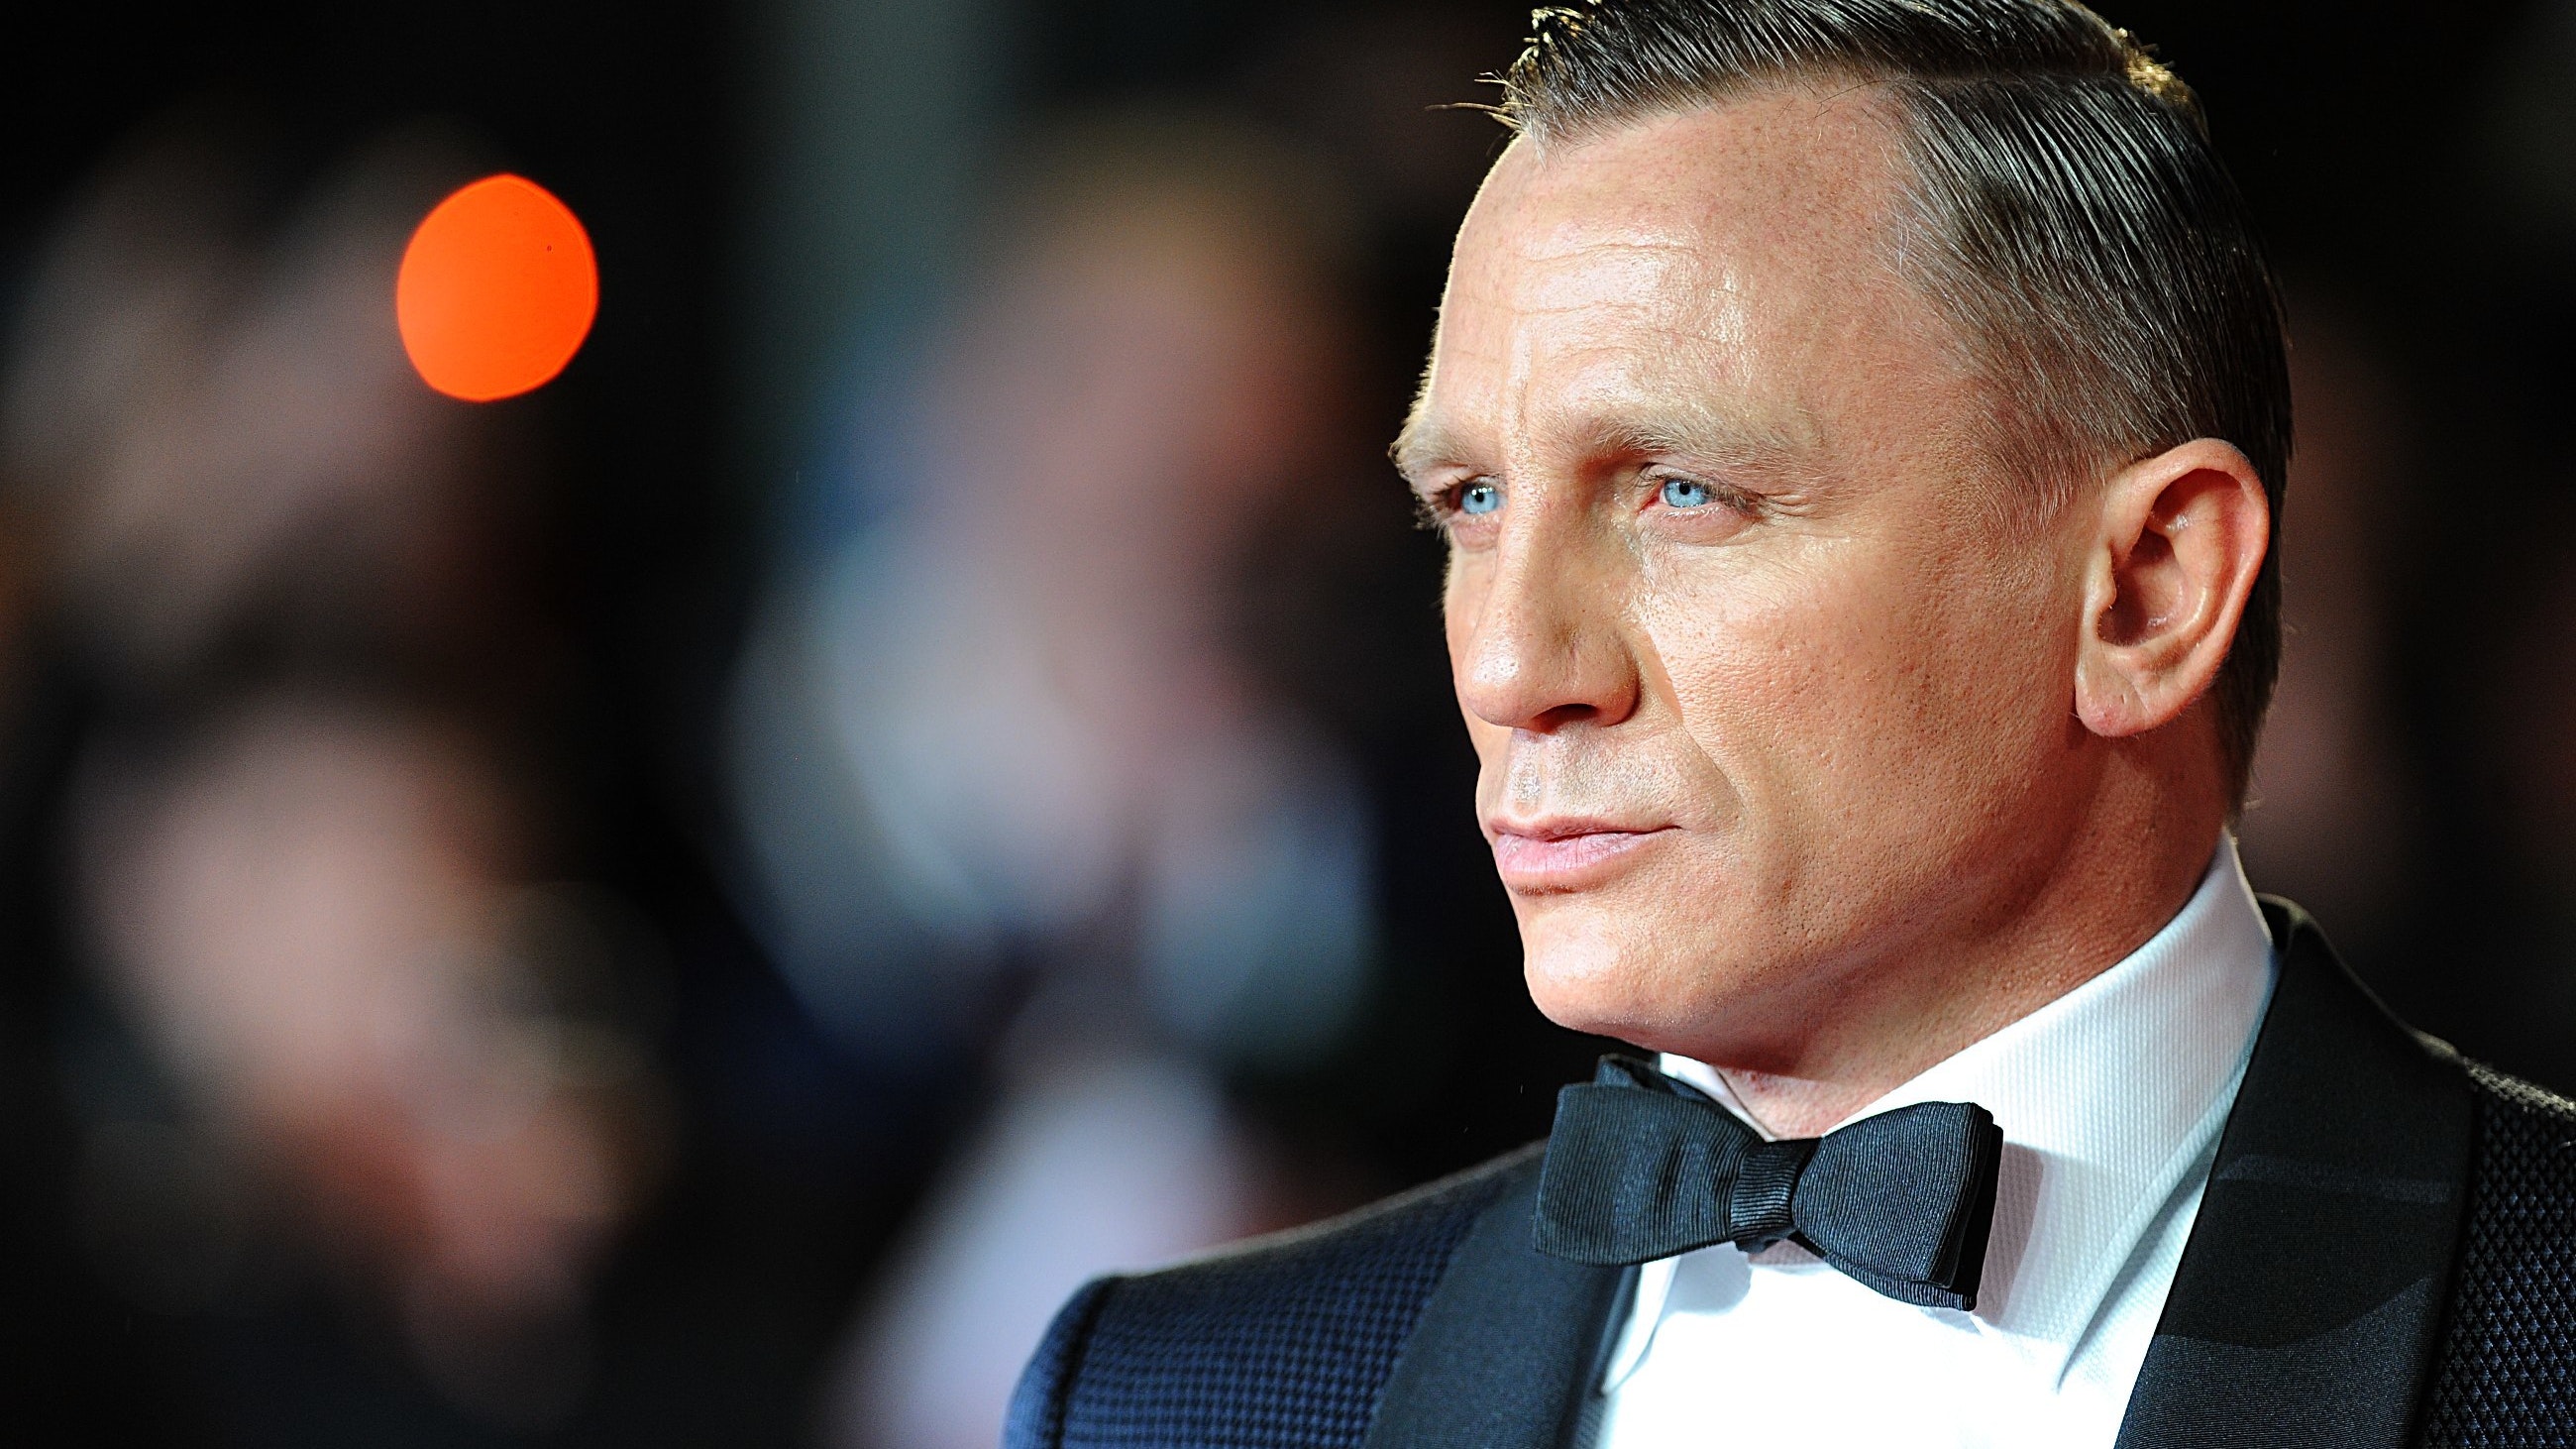 Daniel Craig to become longest serving James Bond BT